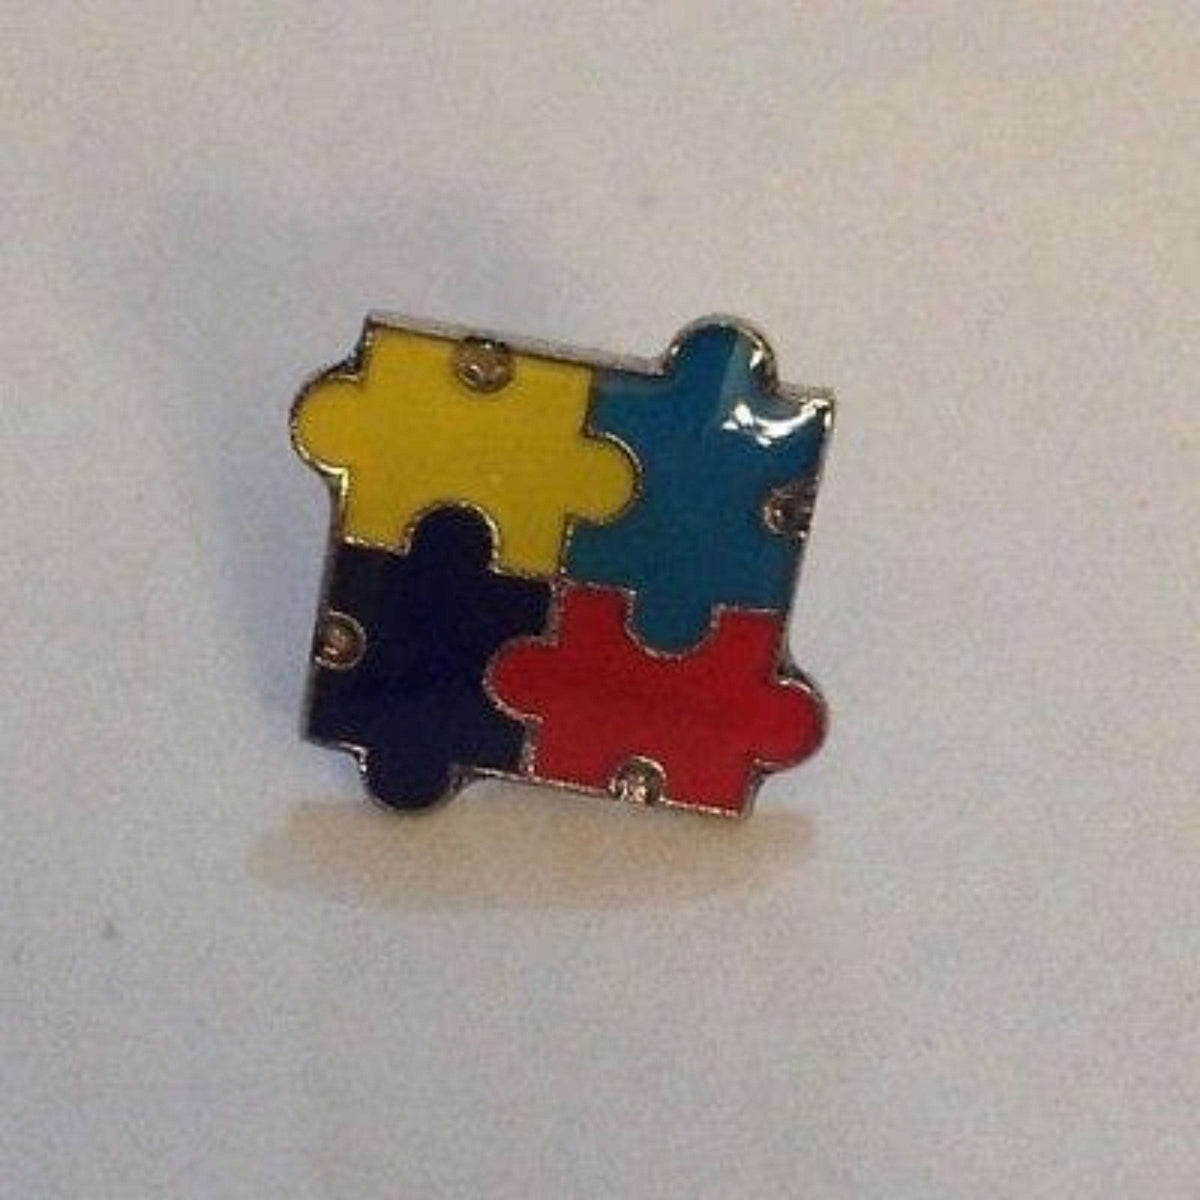 2 Autism Awareness Puzzle Tack Pins - The House of Awareness